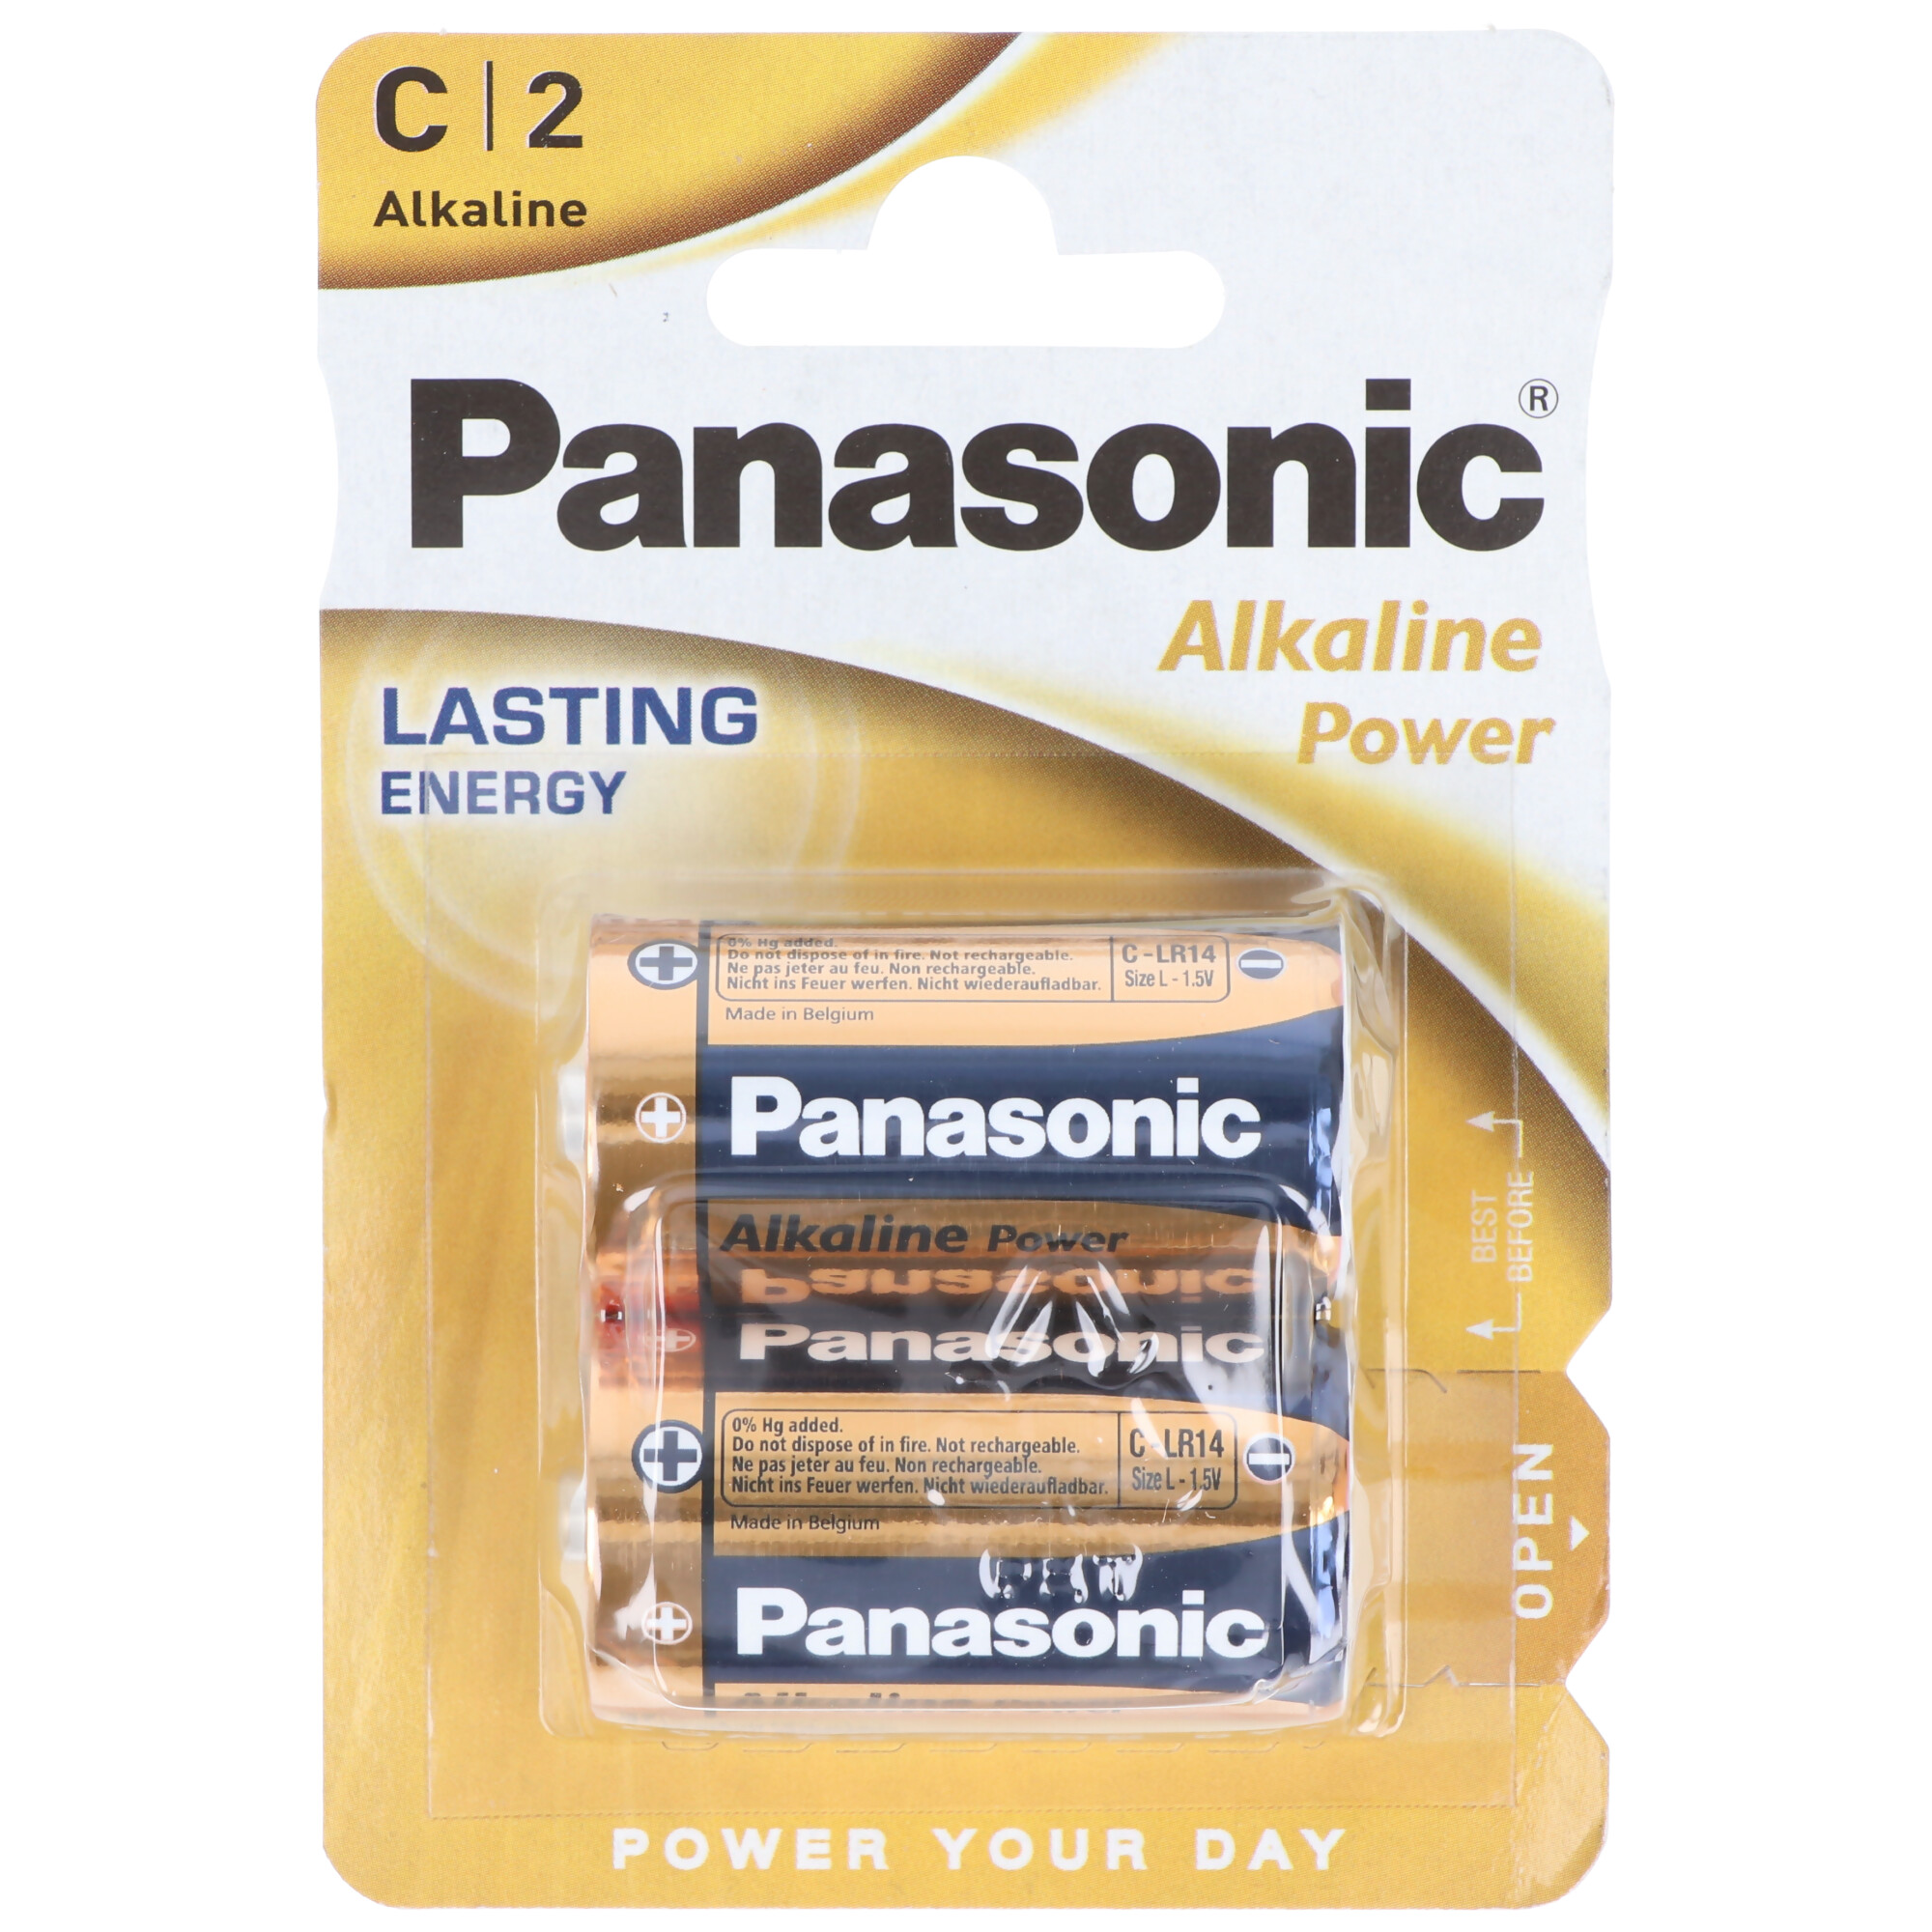 Panasonic Batterie Alkaline, Baby, C, LR14, 1.5V Alkaline Power, Retail Blister (2-Pack)